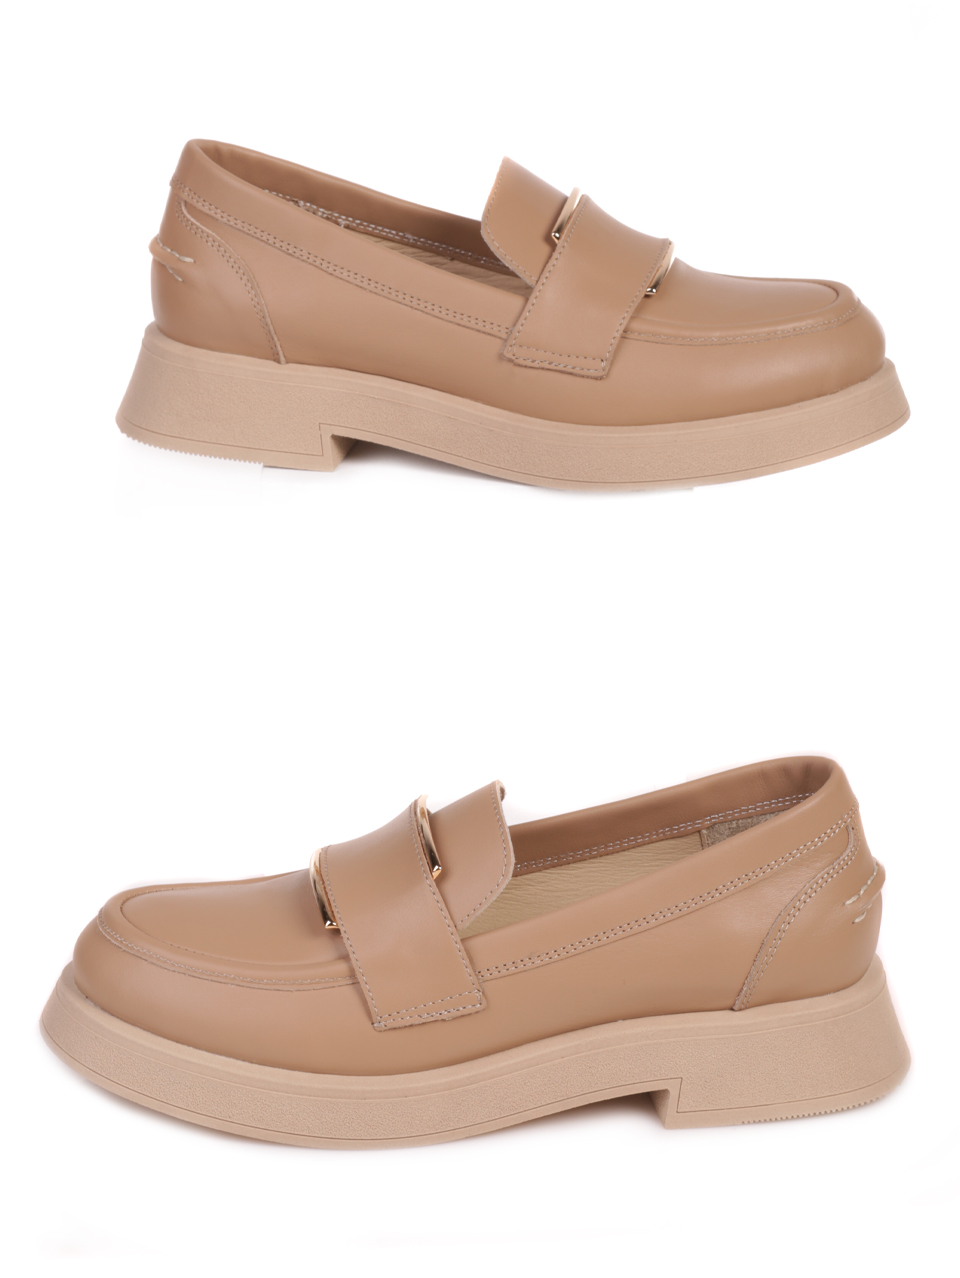 Дамски обувки от естествена кожа в бежово 3AT-23762 beige